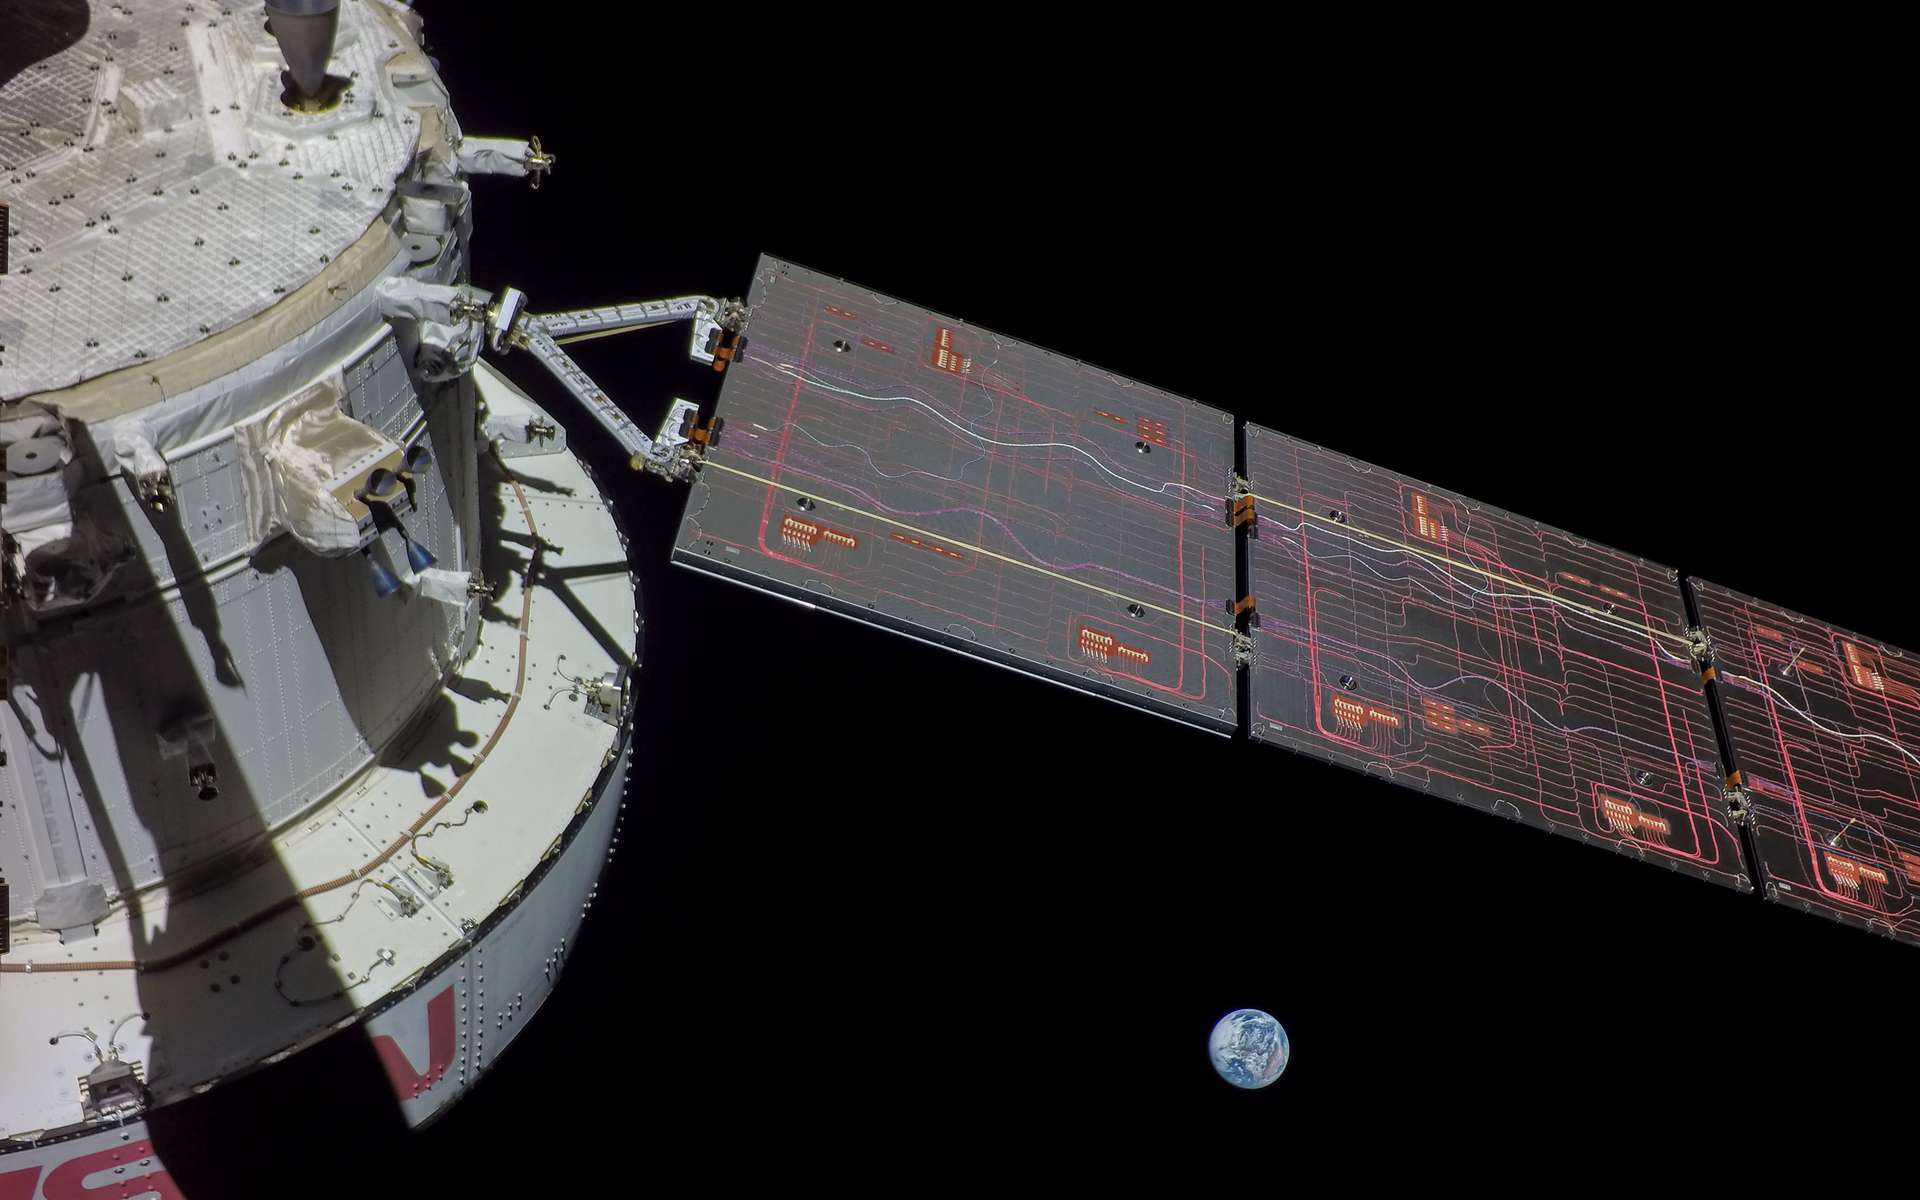 Vivez en direct à 18 h le dangereux retour sur Terre de la capsule Orion de la mission Artemis